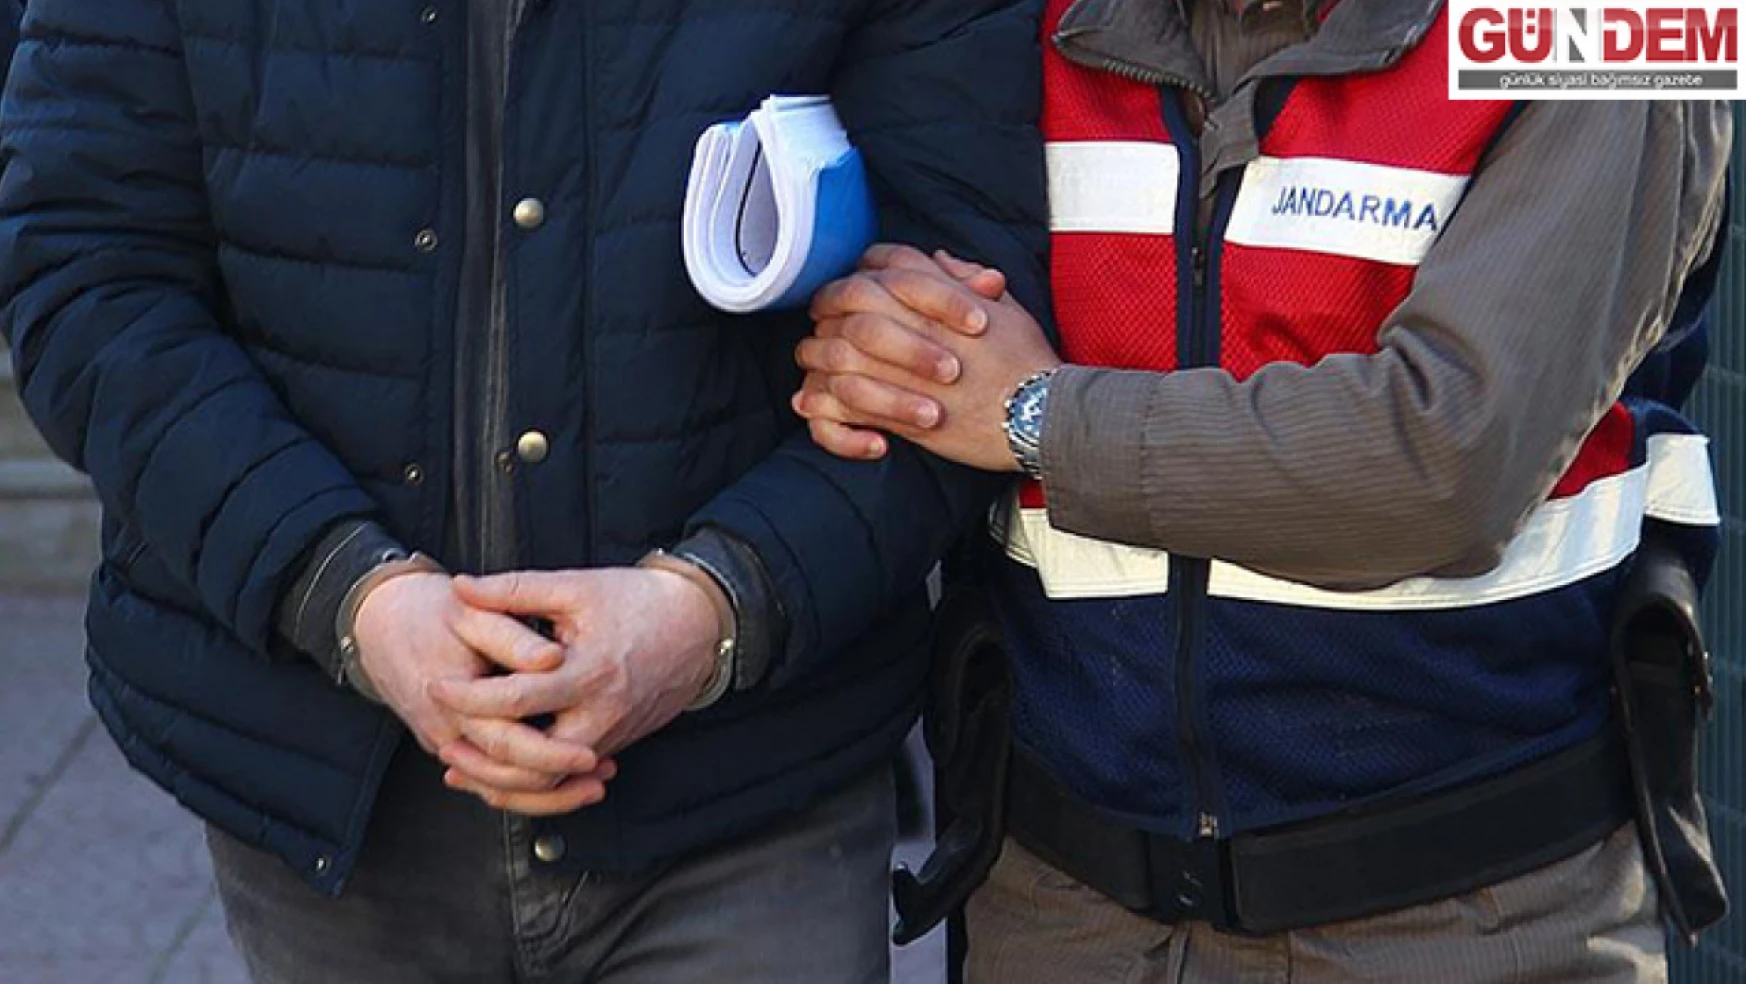 Edirne'de 2 FETÖ şüphelisi Yunanistan'a kaçarken yakalandı